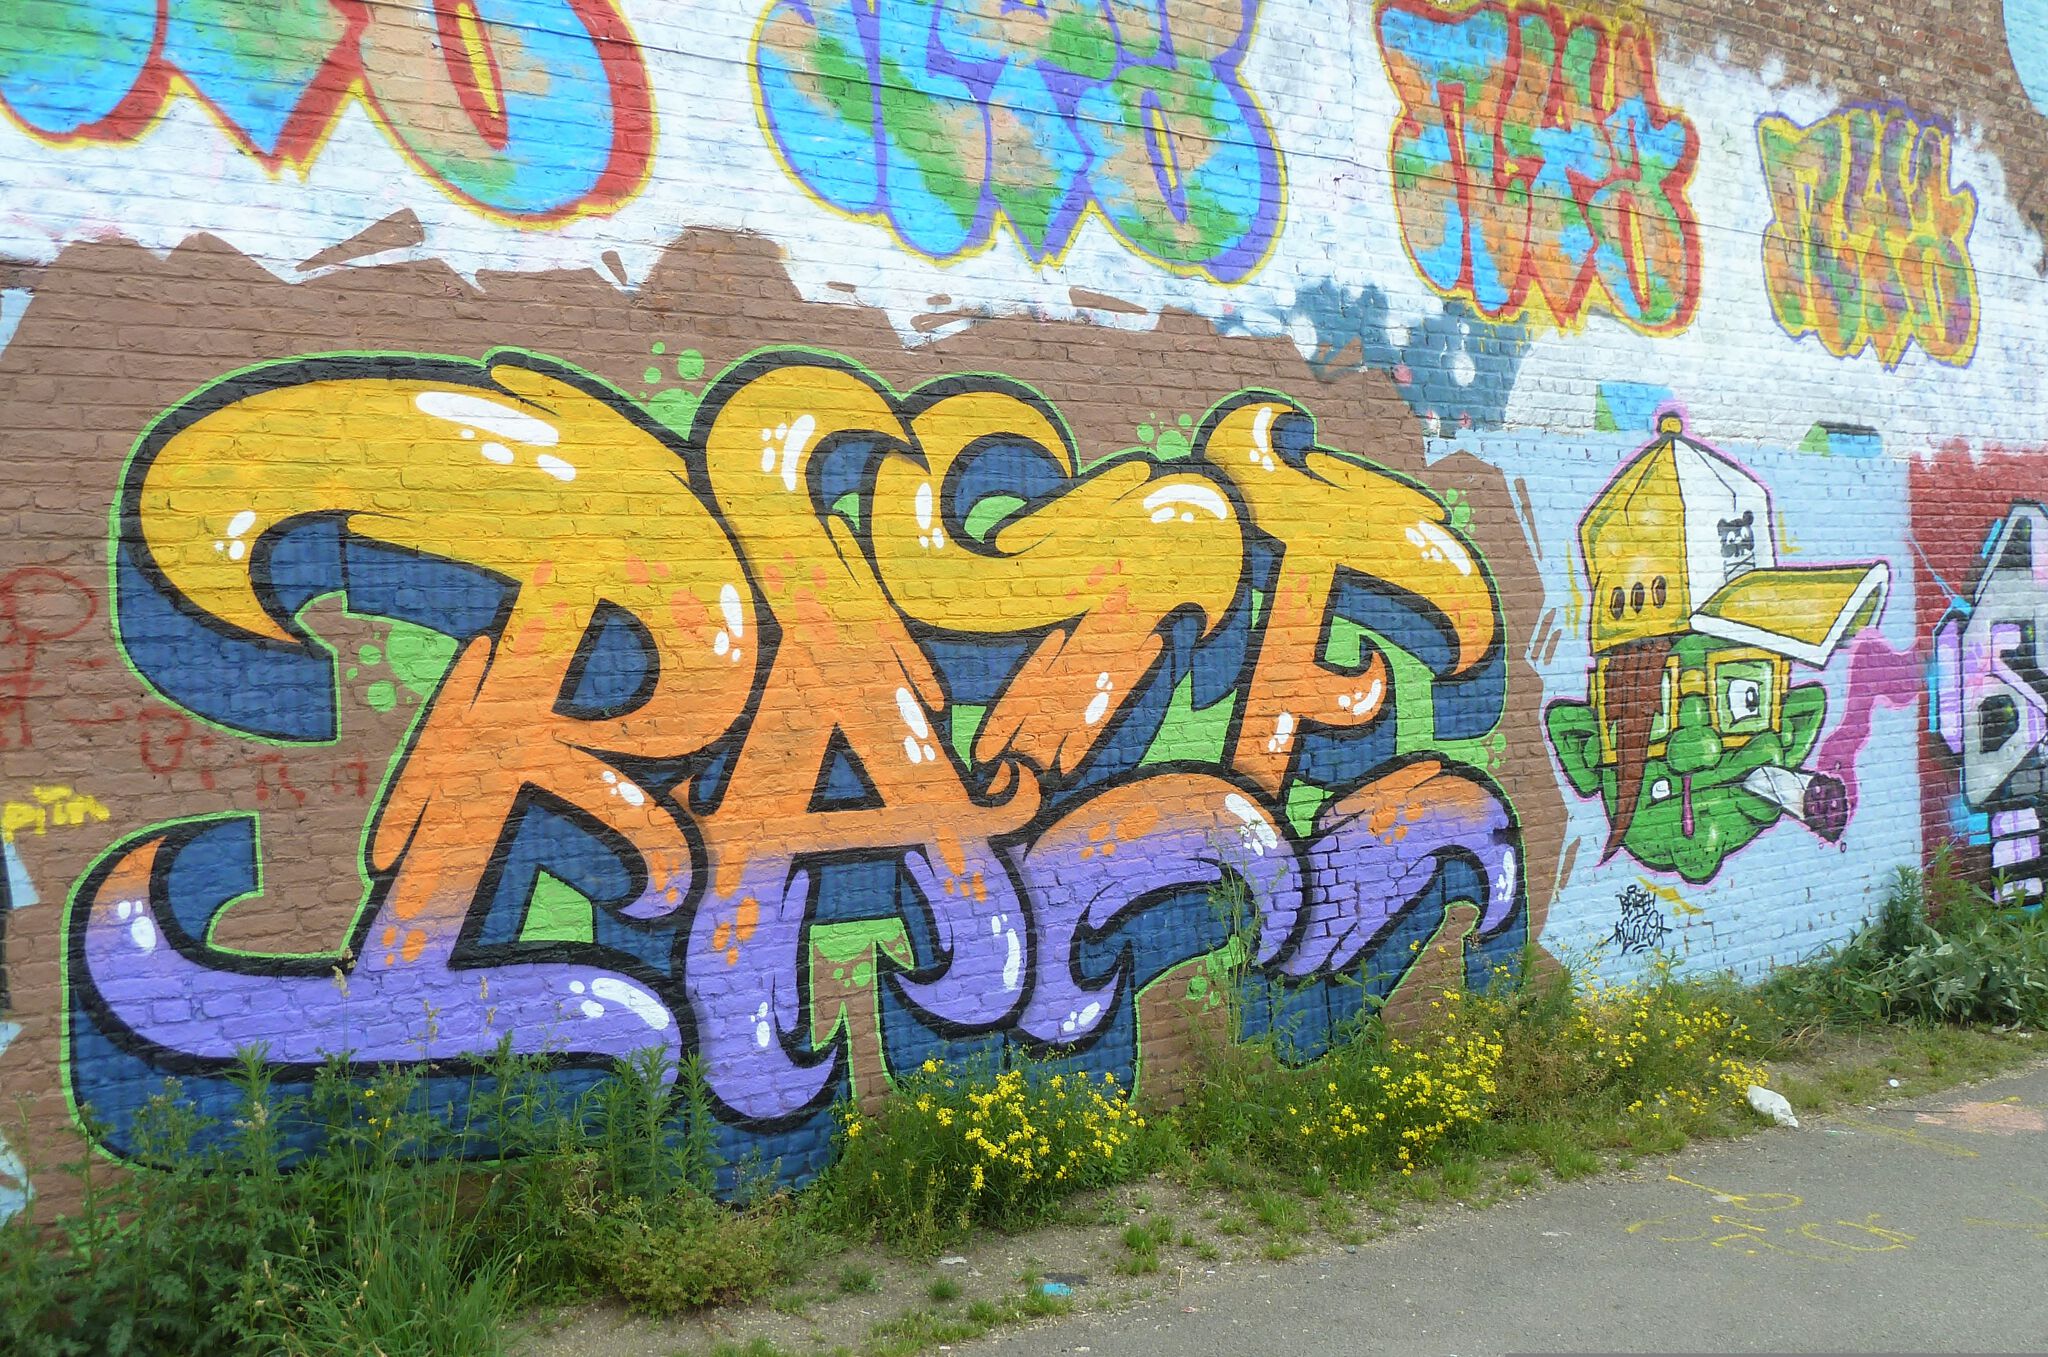 Various Artists&mdash;Steltplaats graffity